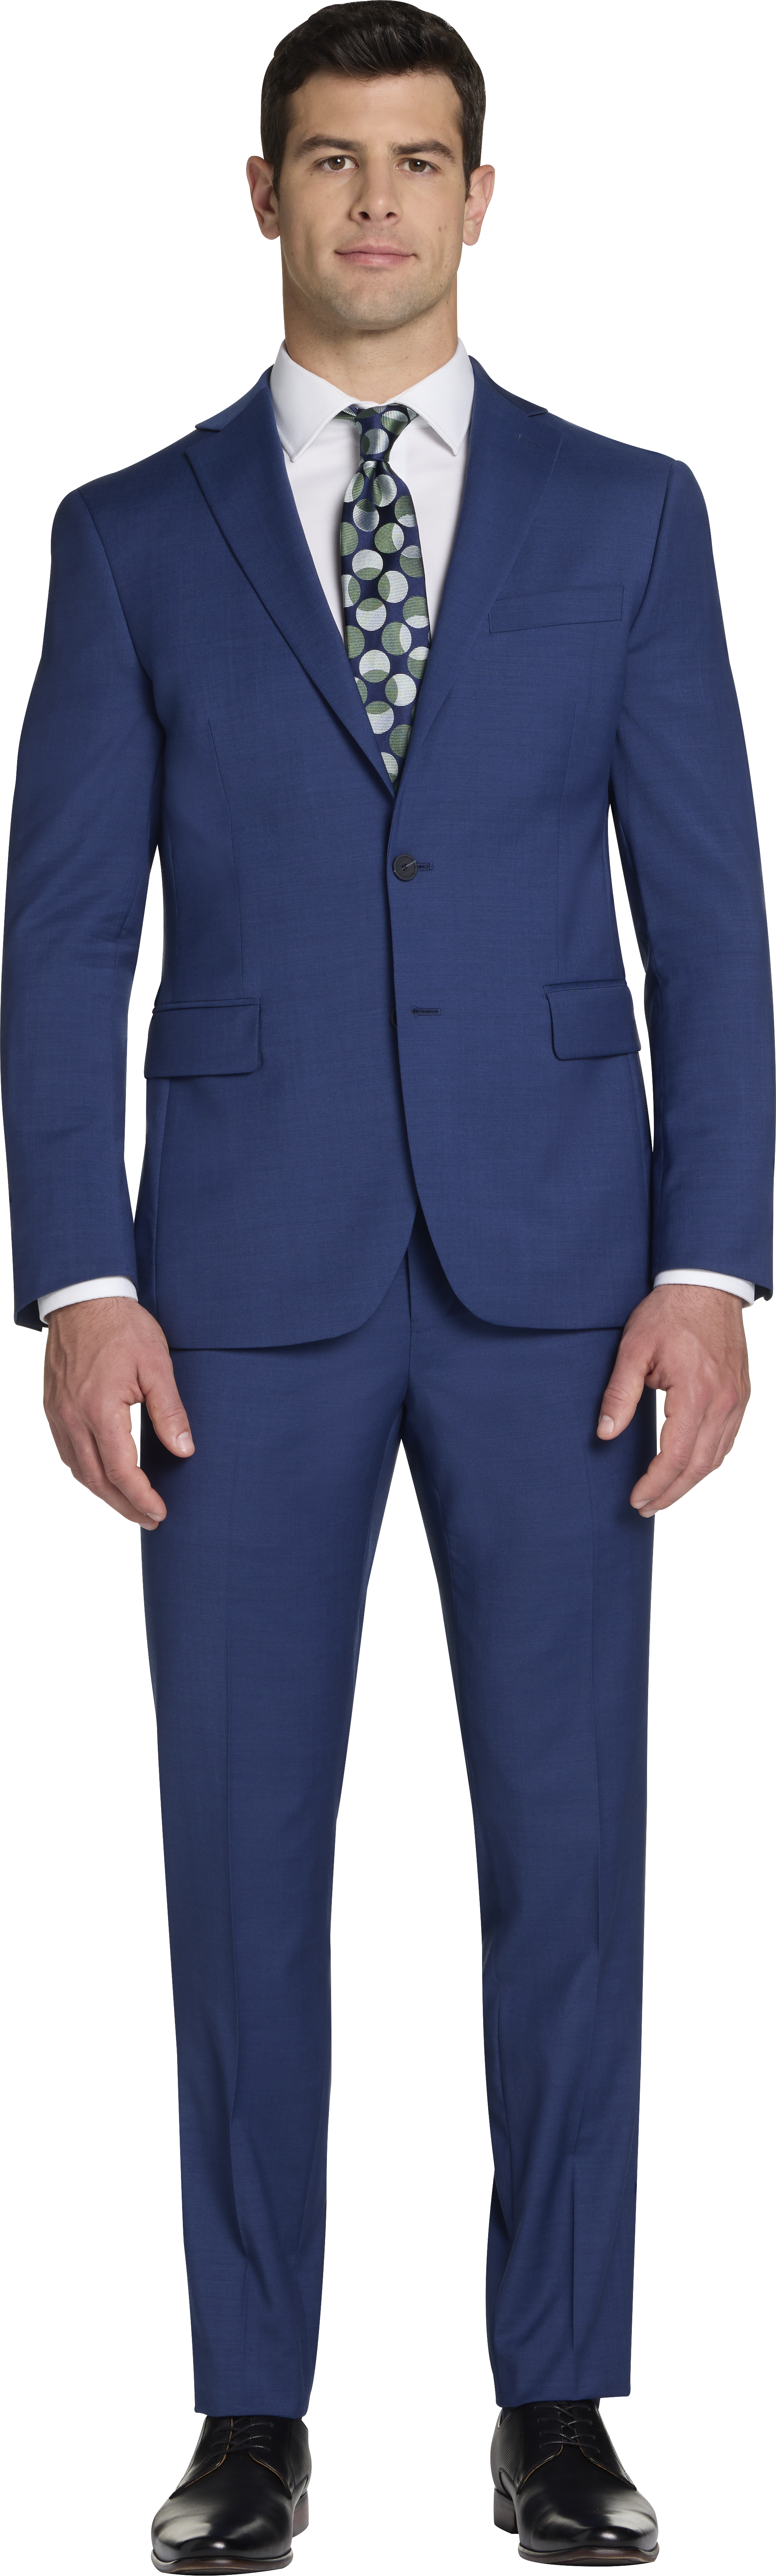 CHILLFLEX Slim Fit Notch Lapel Suit Separates Jacket